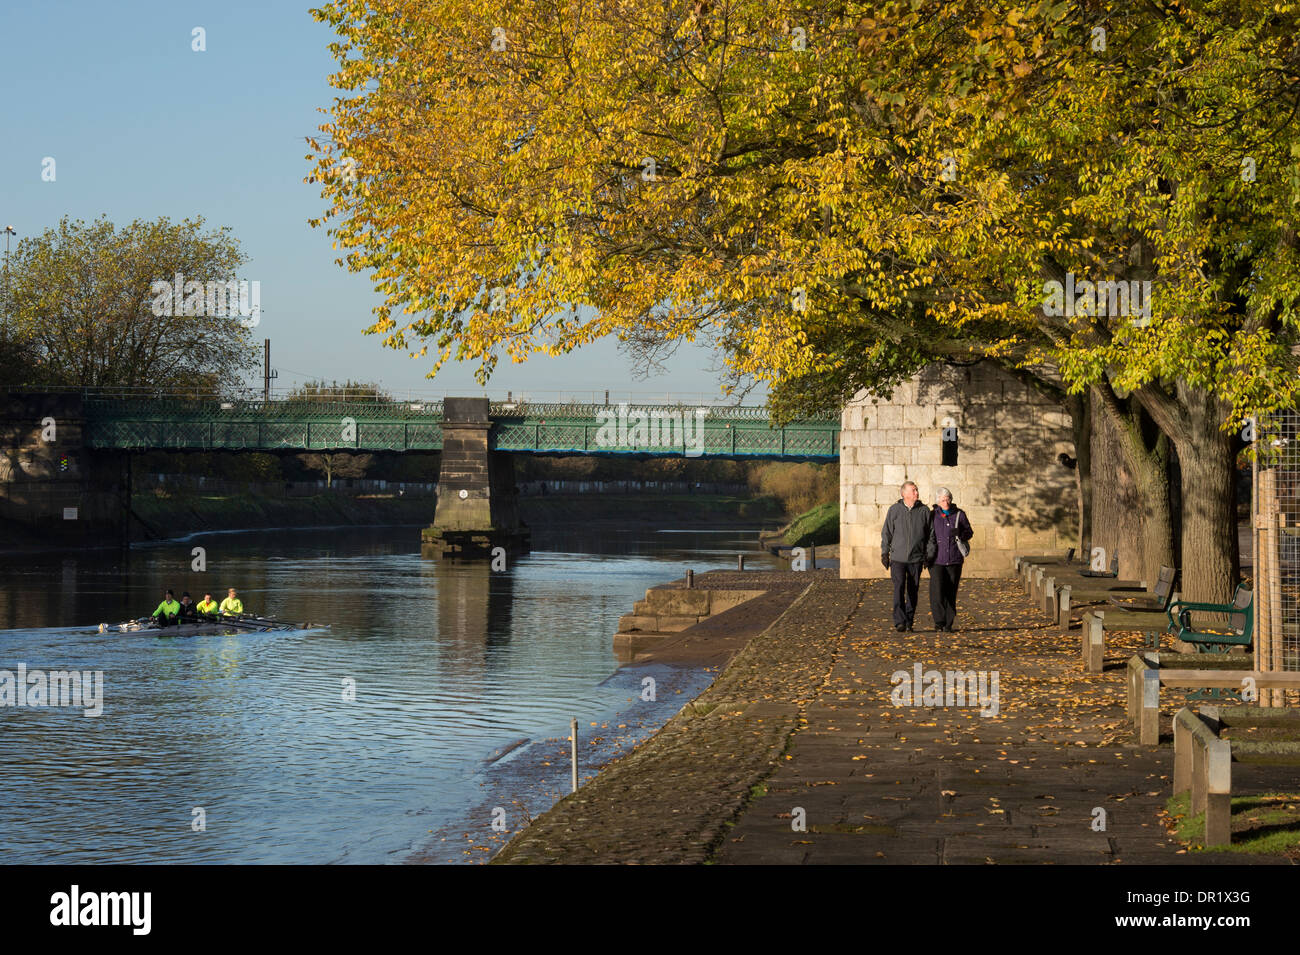 Remi in barca & giovane a piedi - tranquillo, Scenic, soleggiato, alberata sentiero lungo il fiume in autunno - fiume Ouse, Dame Judi Dench a piedi, York, England, Regno Unito Foto Stock